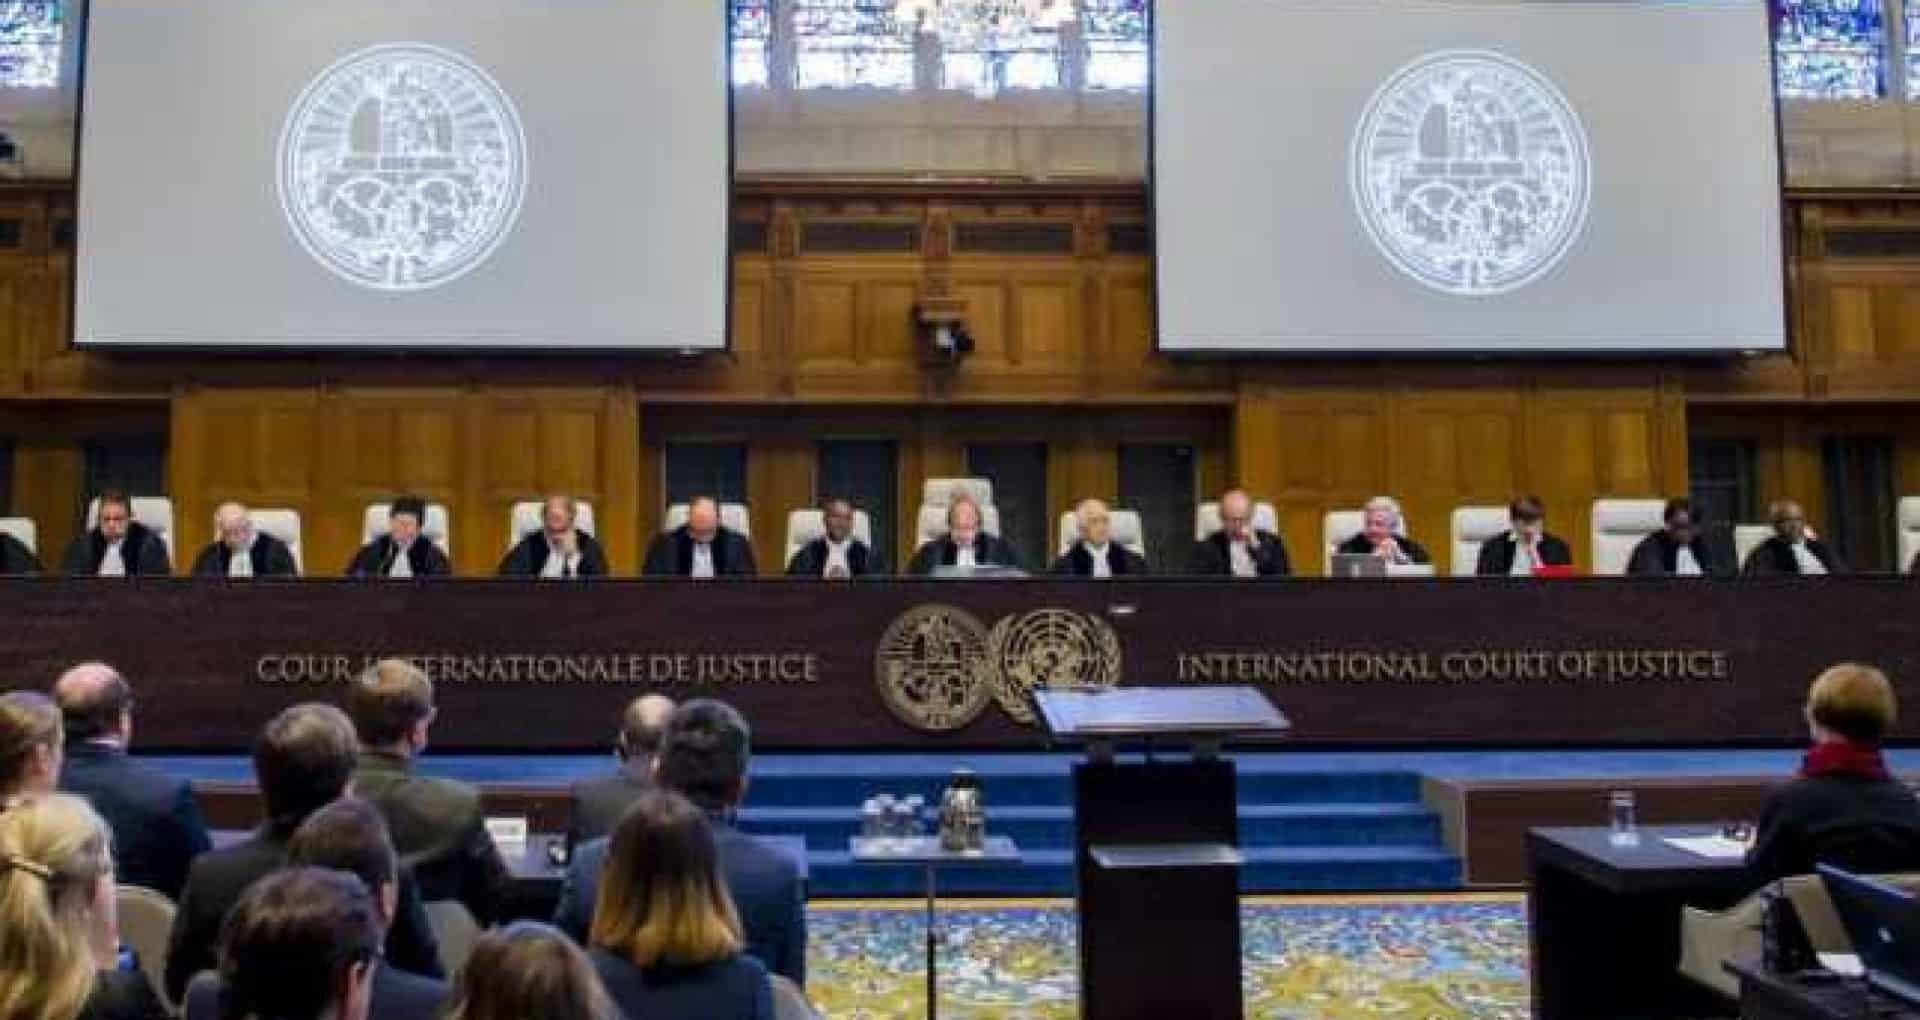  13 din cei 15 judecători ai Curţii Internaţionale au cerut Rusiei să suspende operaţiunile militare din Ucraina